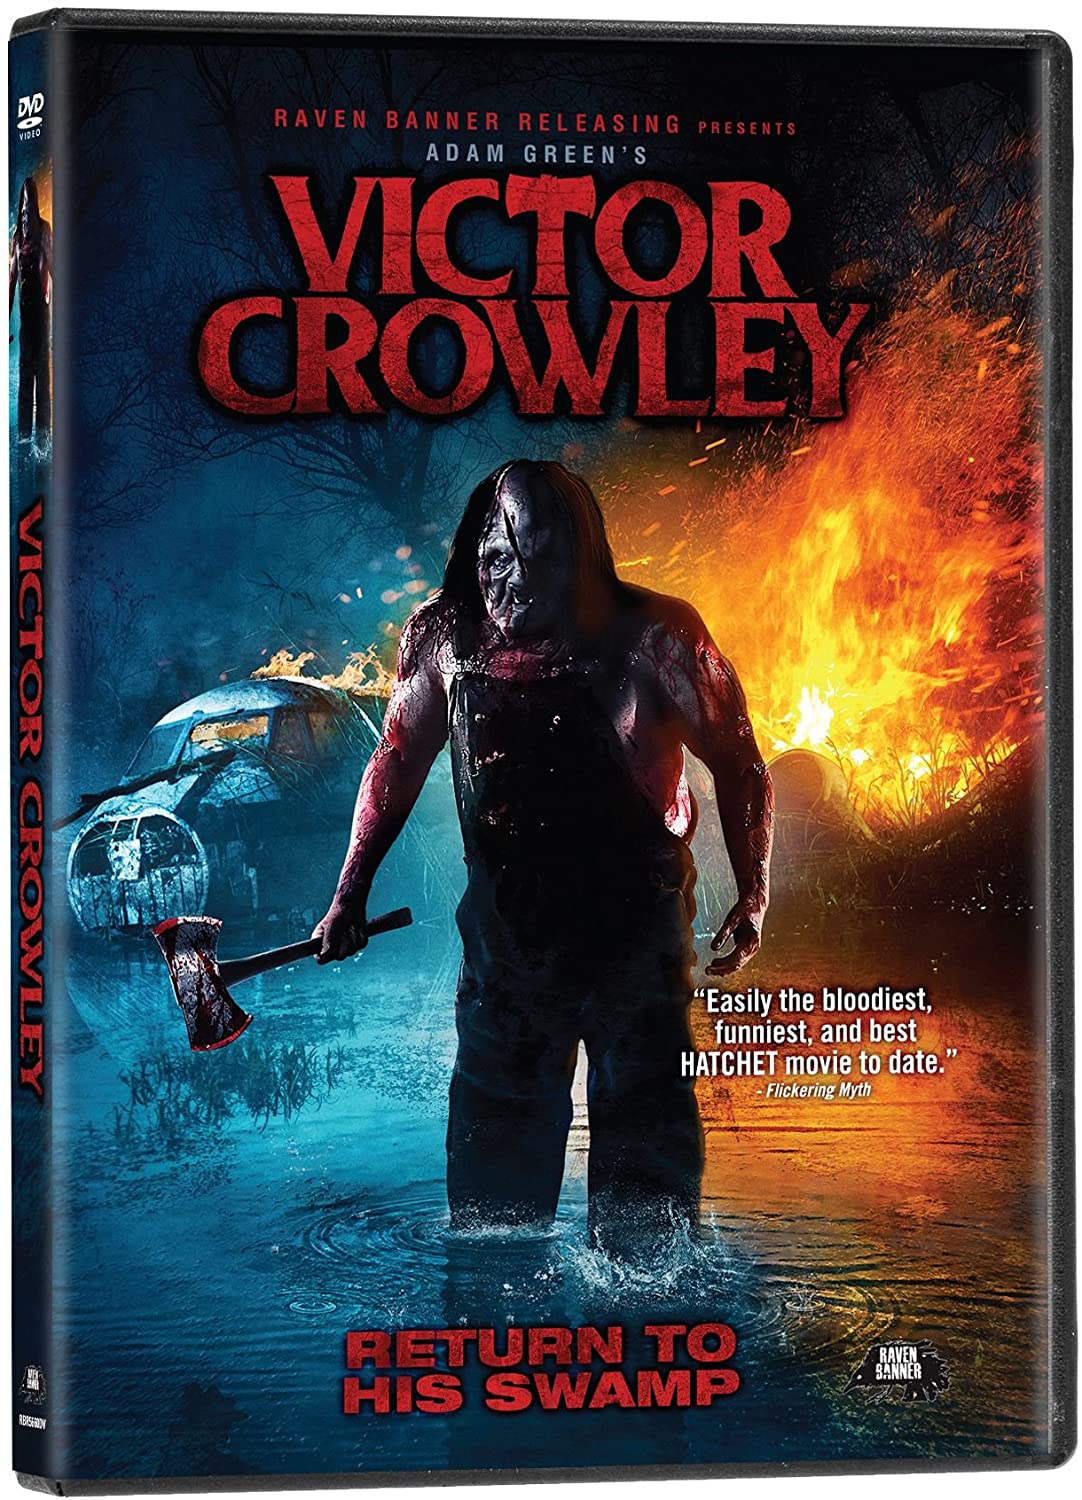 VICTOR CROWLEY - DVD